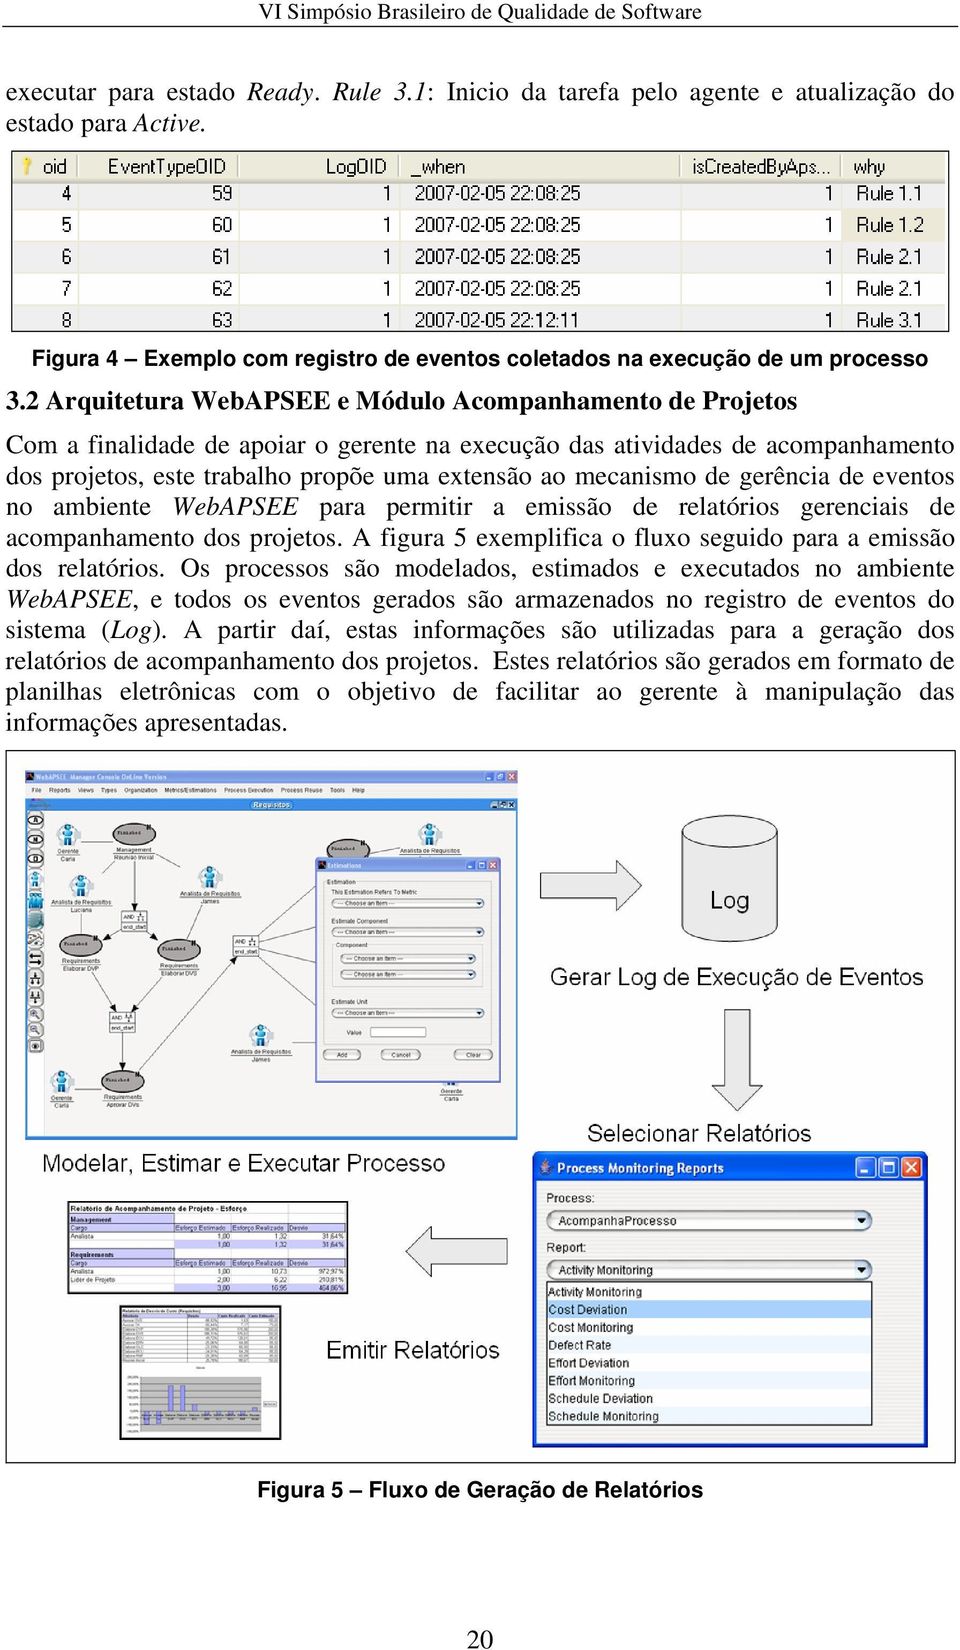 mecanismo de gerência de eventos no ambiente WebAPSEE para permitir a emissão de relatórios gerenciais de acompanhamento dos projetos.